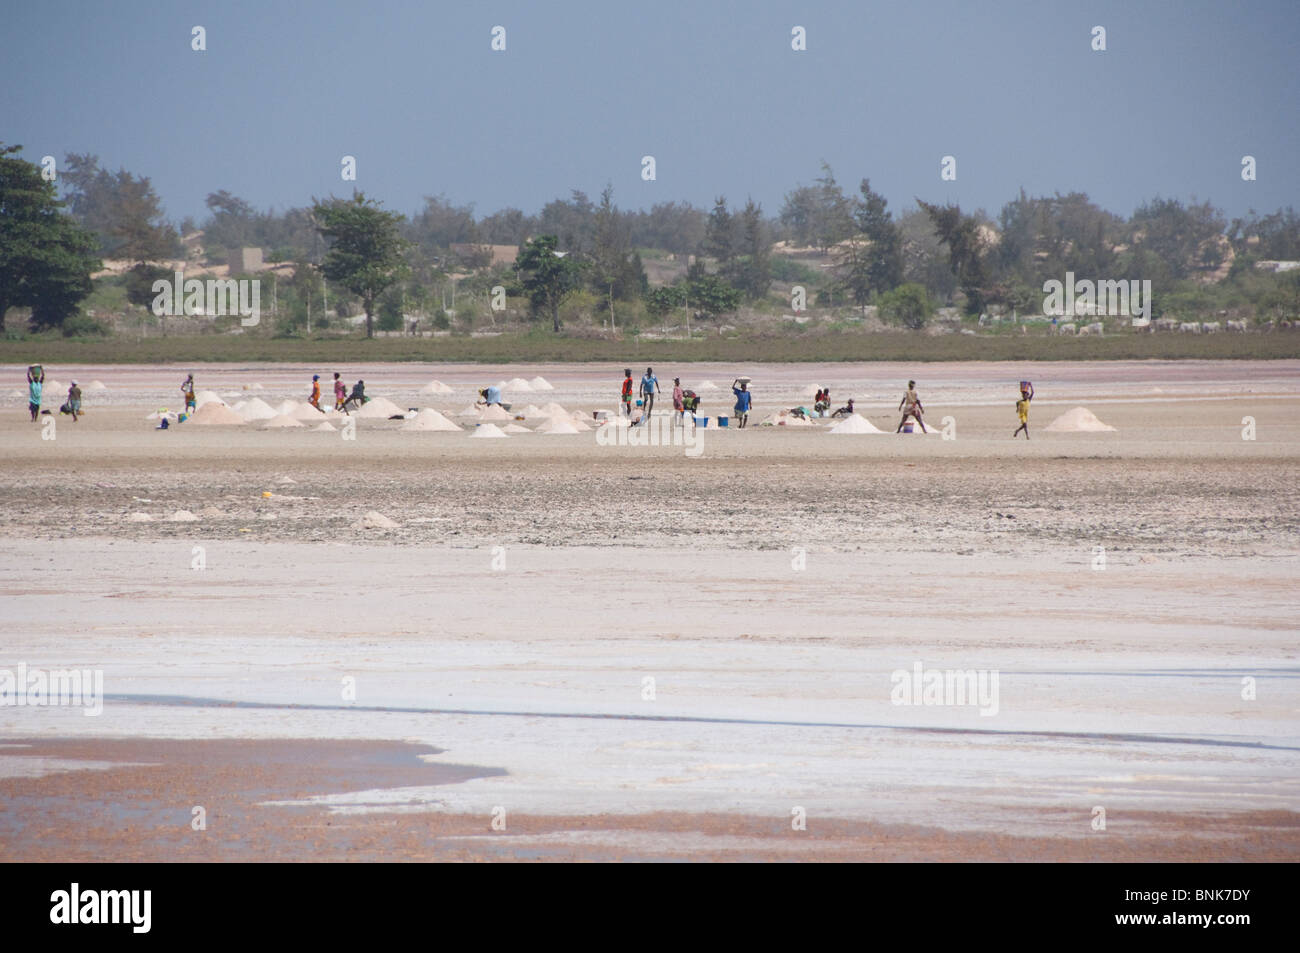 Afrique, Sénégal, Dakar. Le Lac Rose de Retba. La récolte de sel de voirie le long de la rive du lac. Banque D'Images